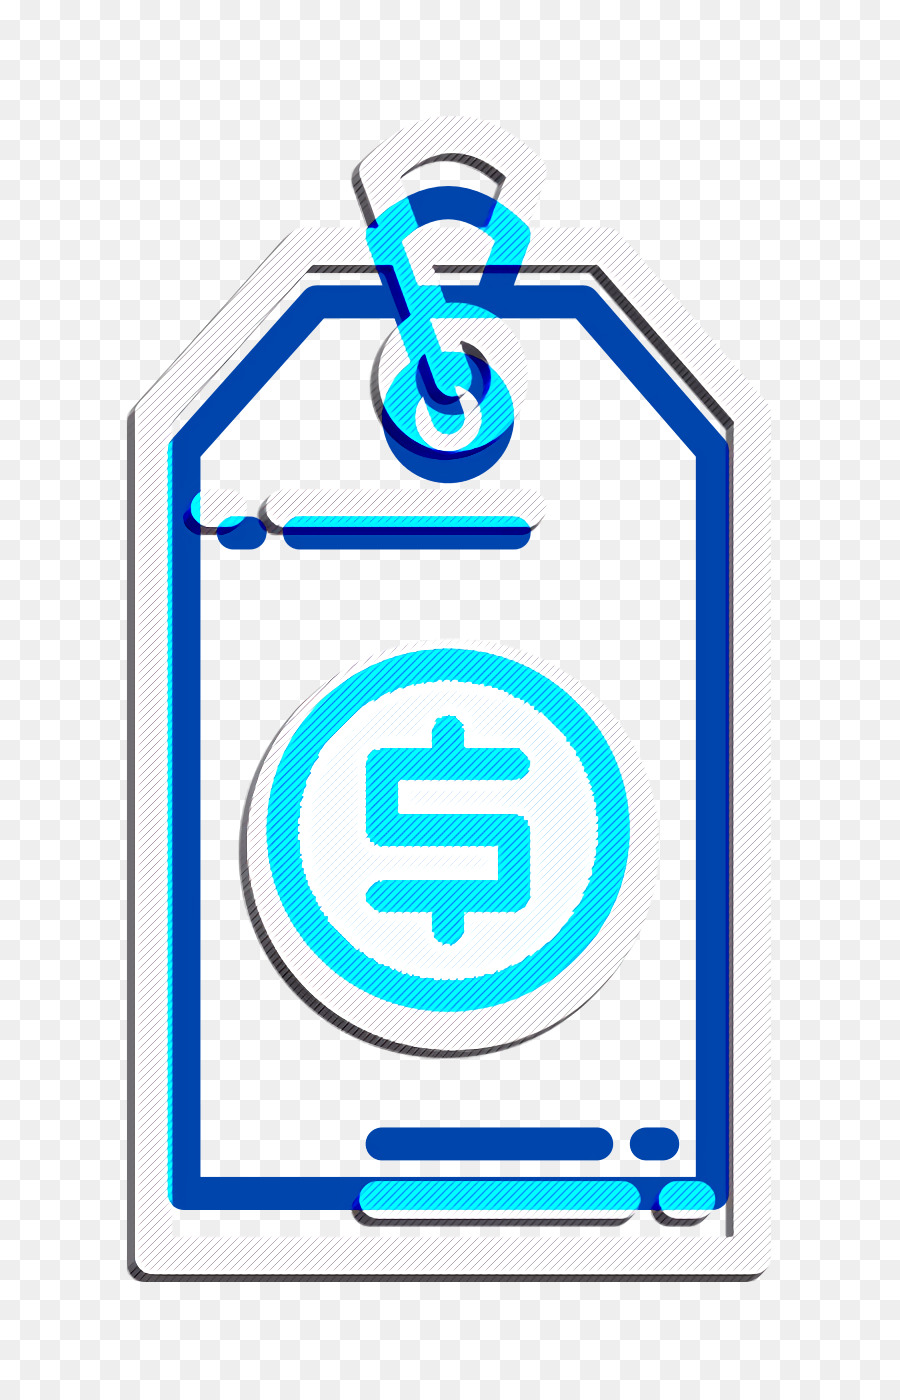 Price tag icon Price icon Money Funding icon